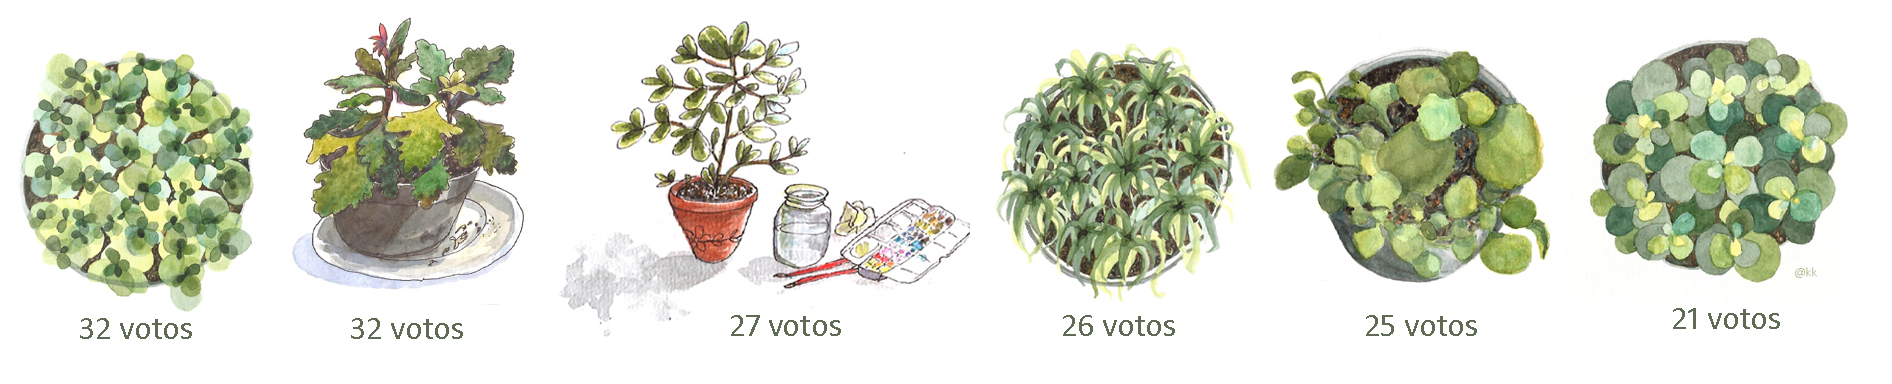 plantas_votacao.jpg